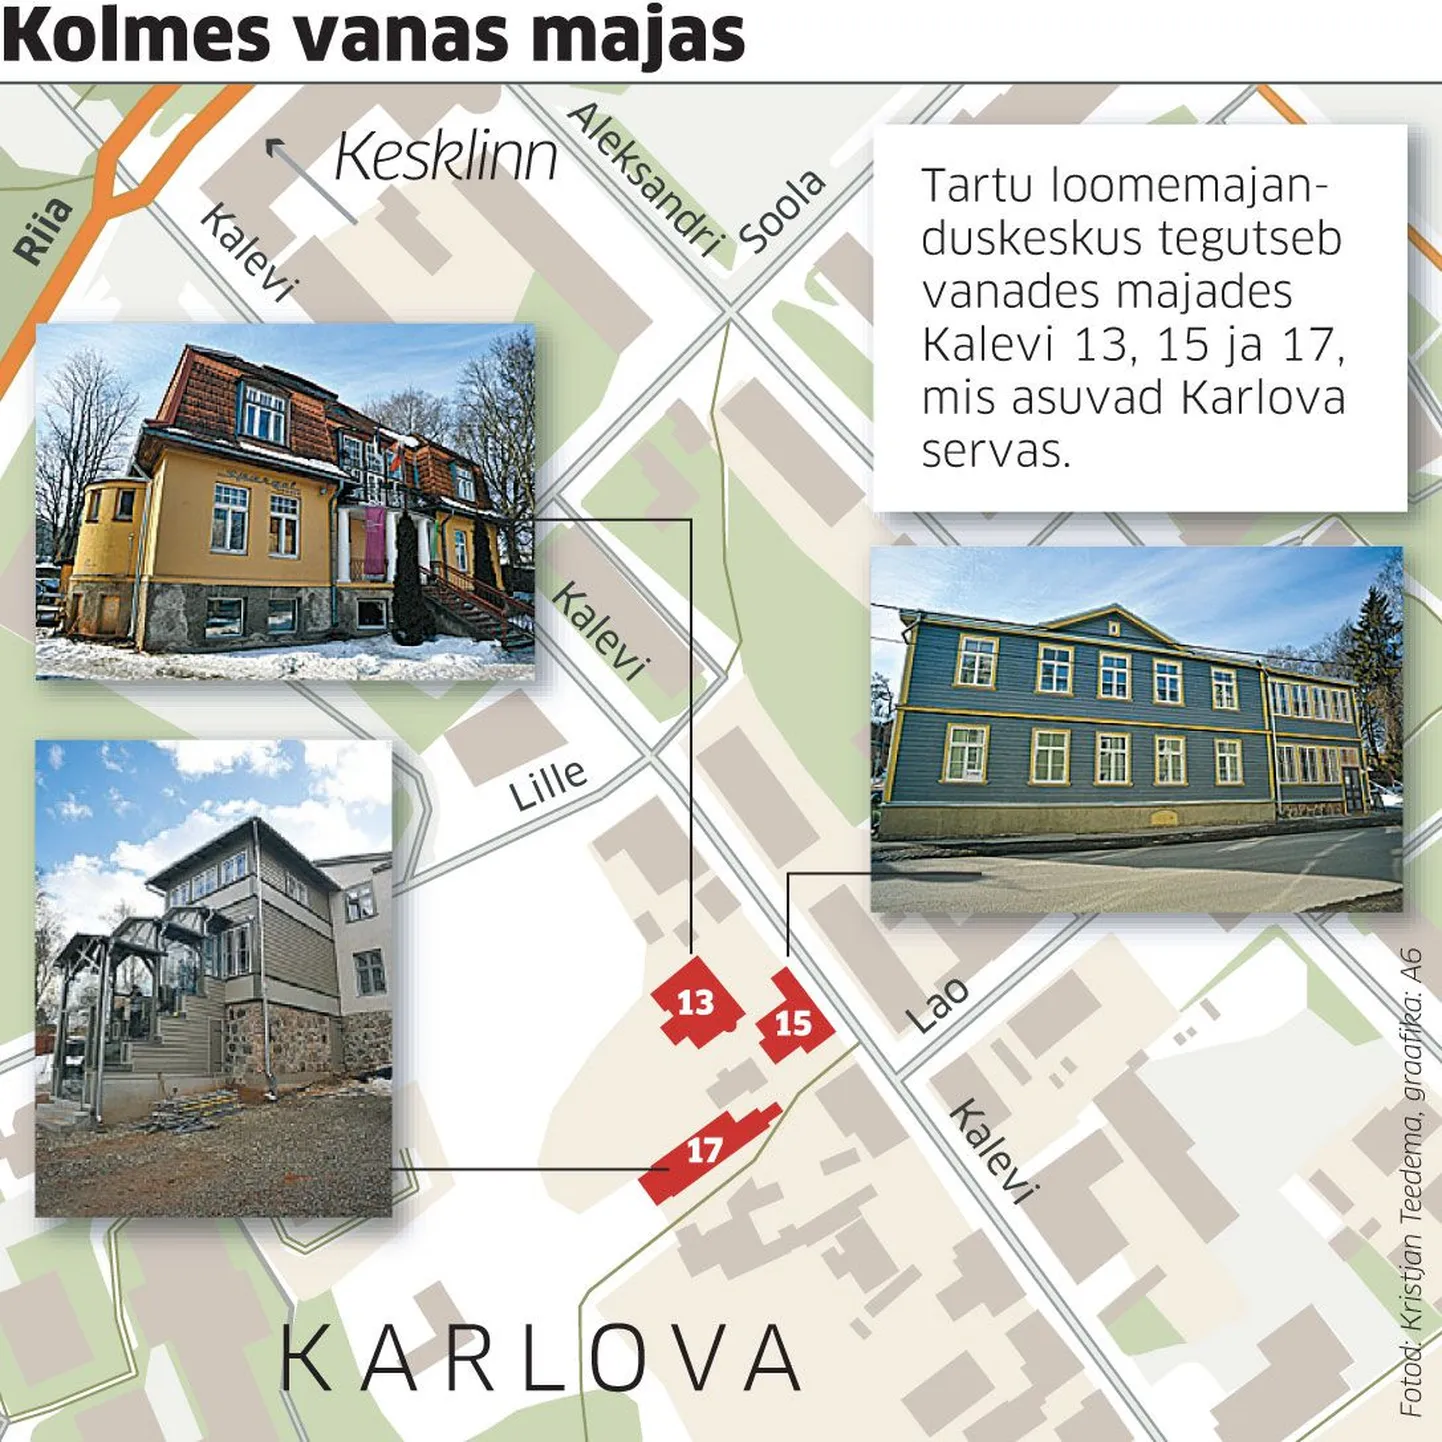 Tartu loomemajanduskeskus tegutseb vanades majades.